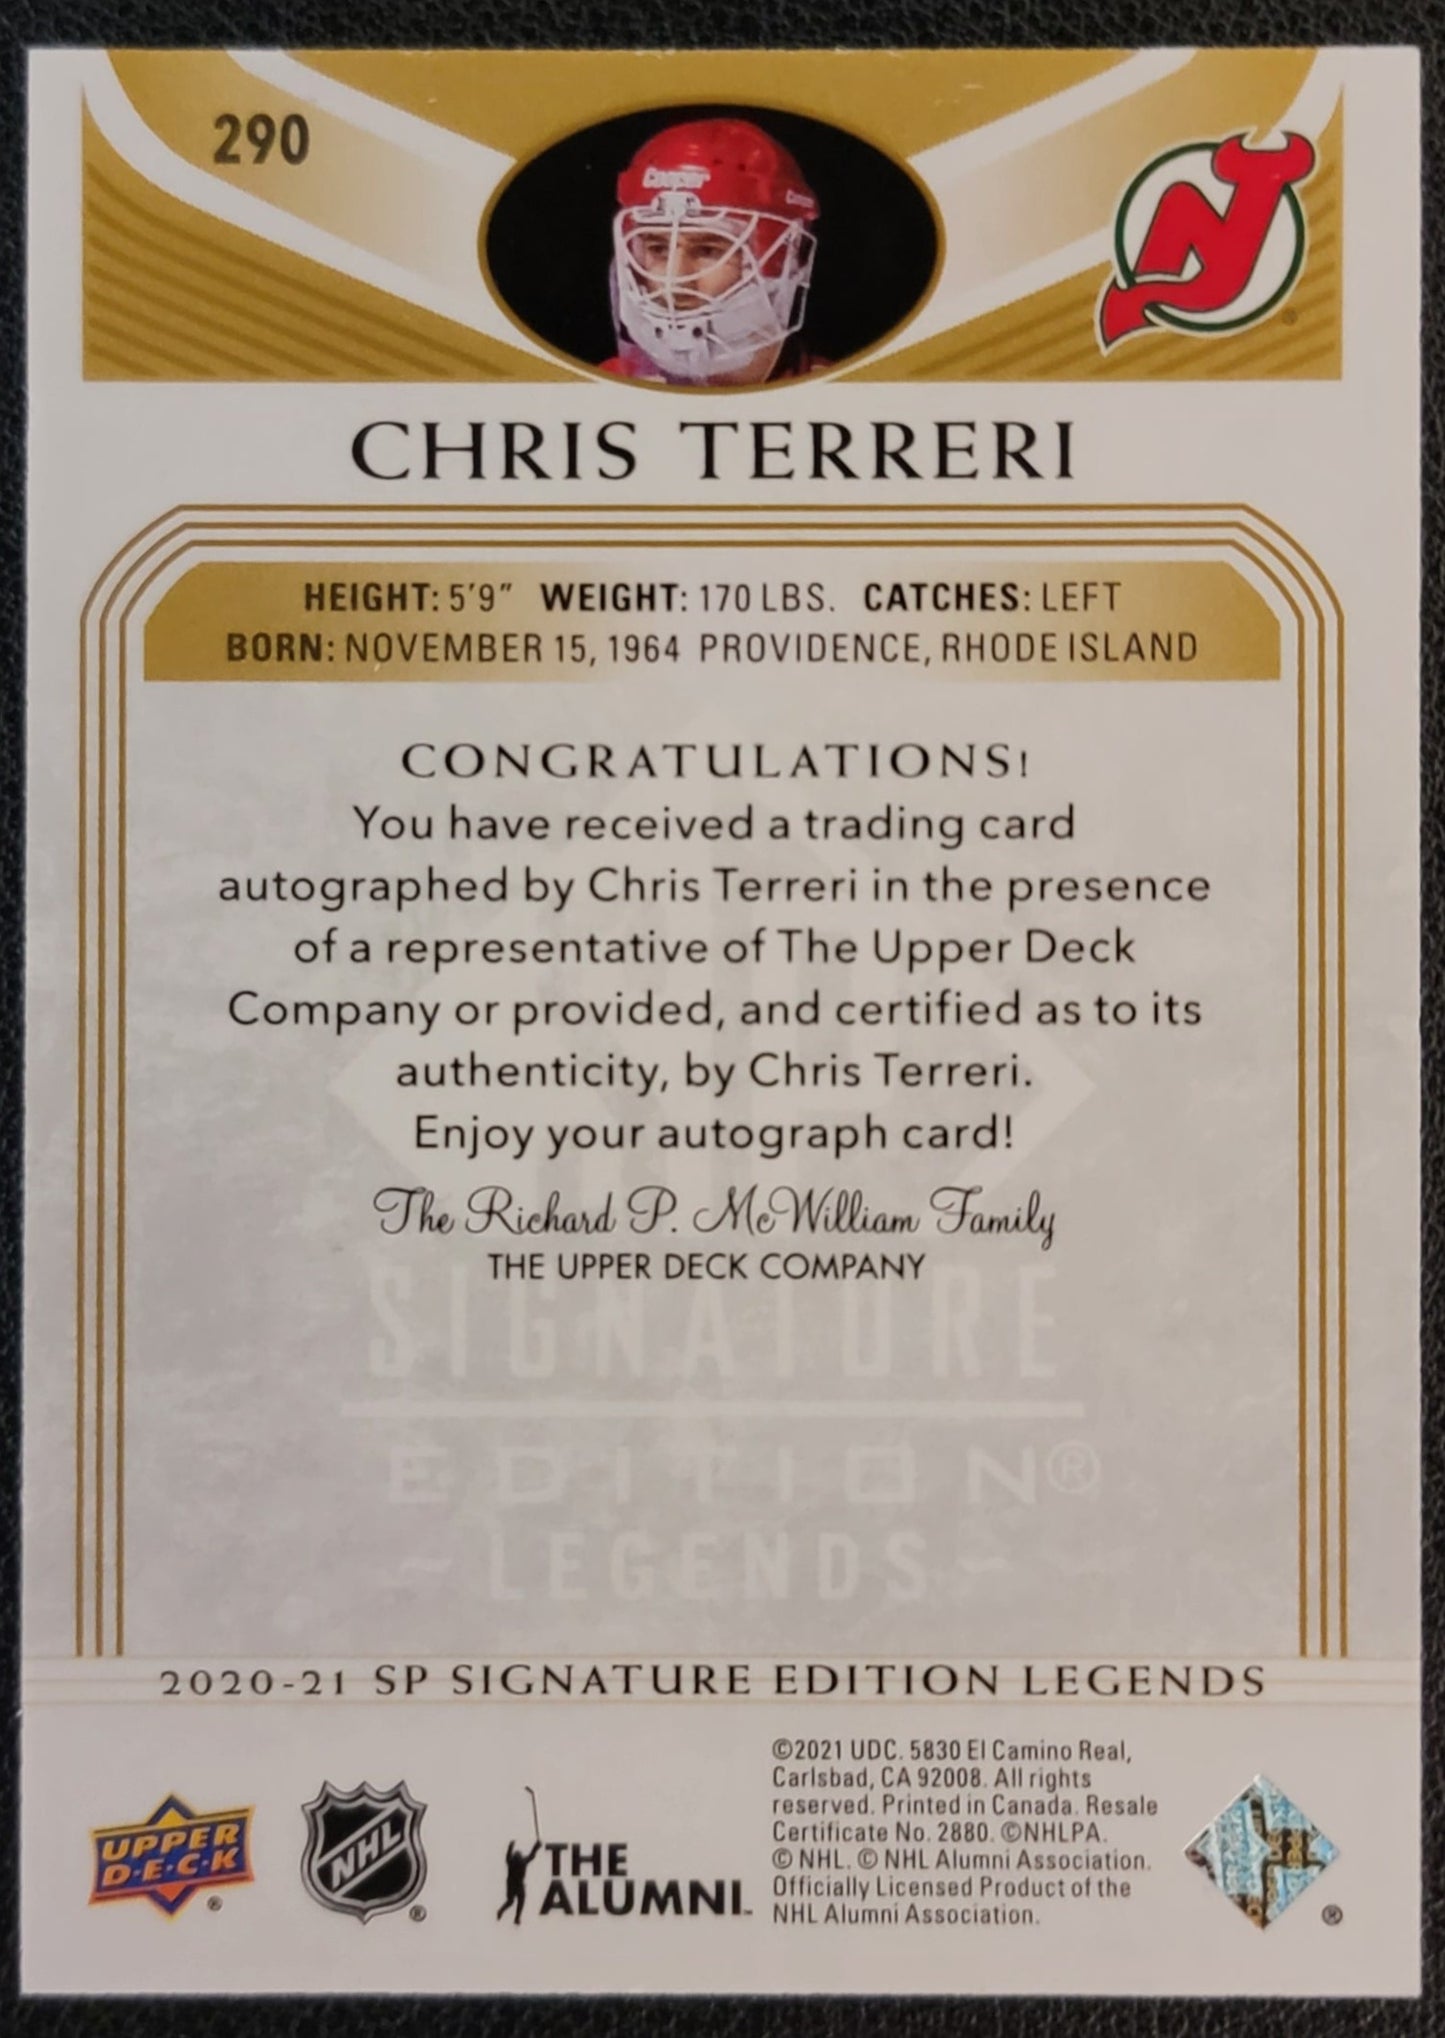 Chris Terreri Autograph #290 New Jersey Devils - 2020/21 SP Signature  Edition Legends